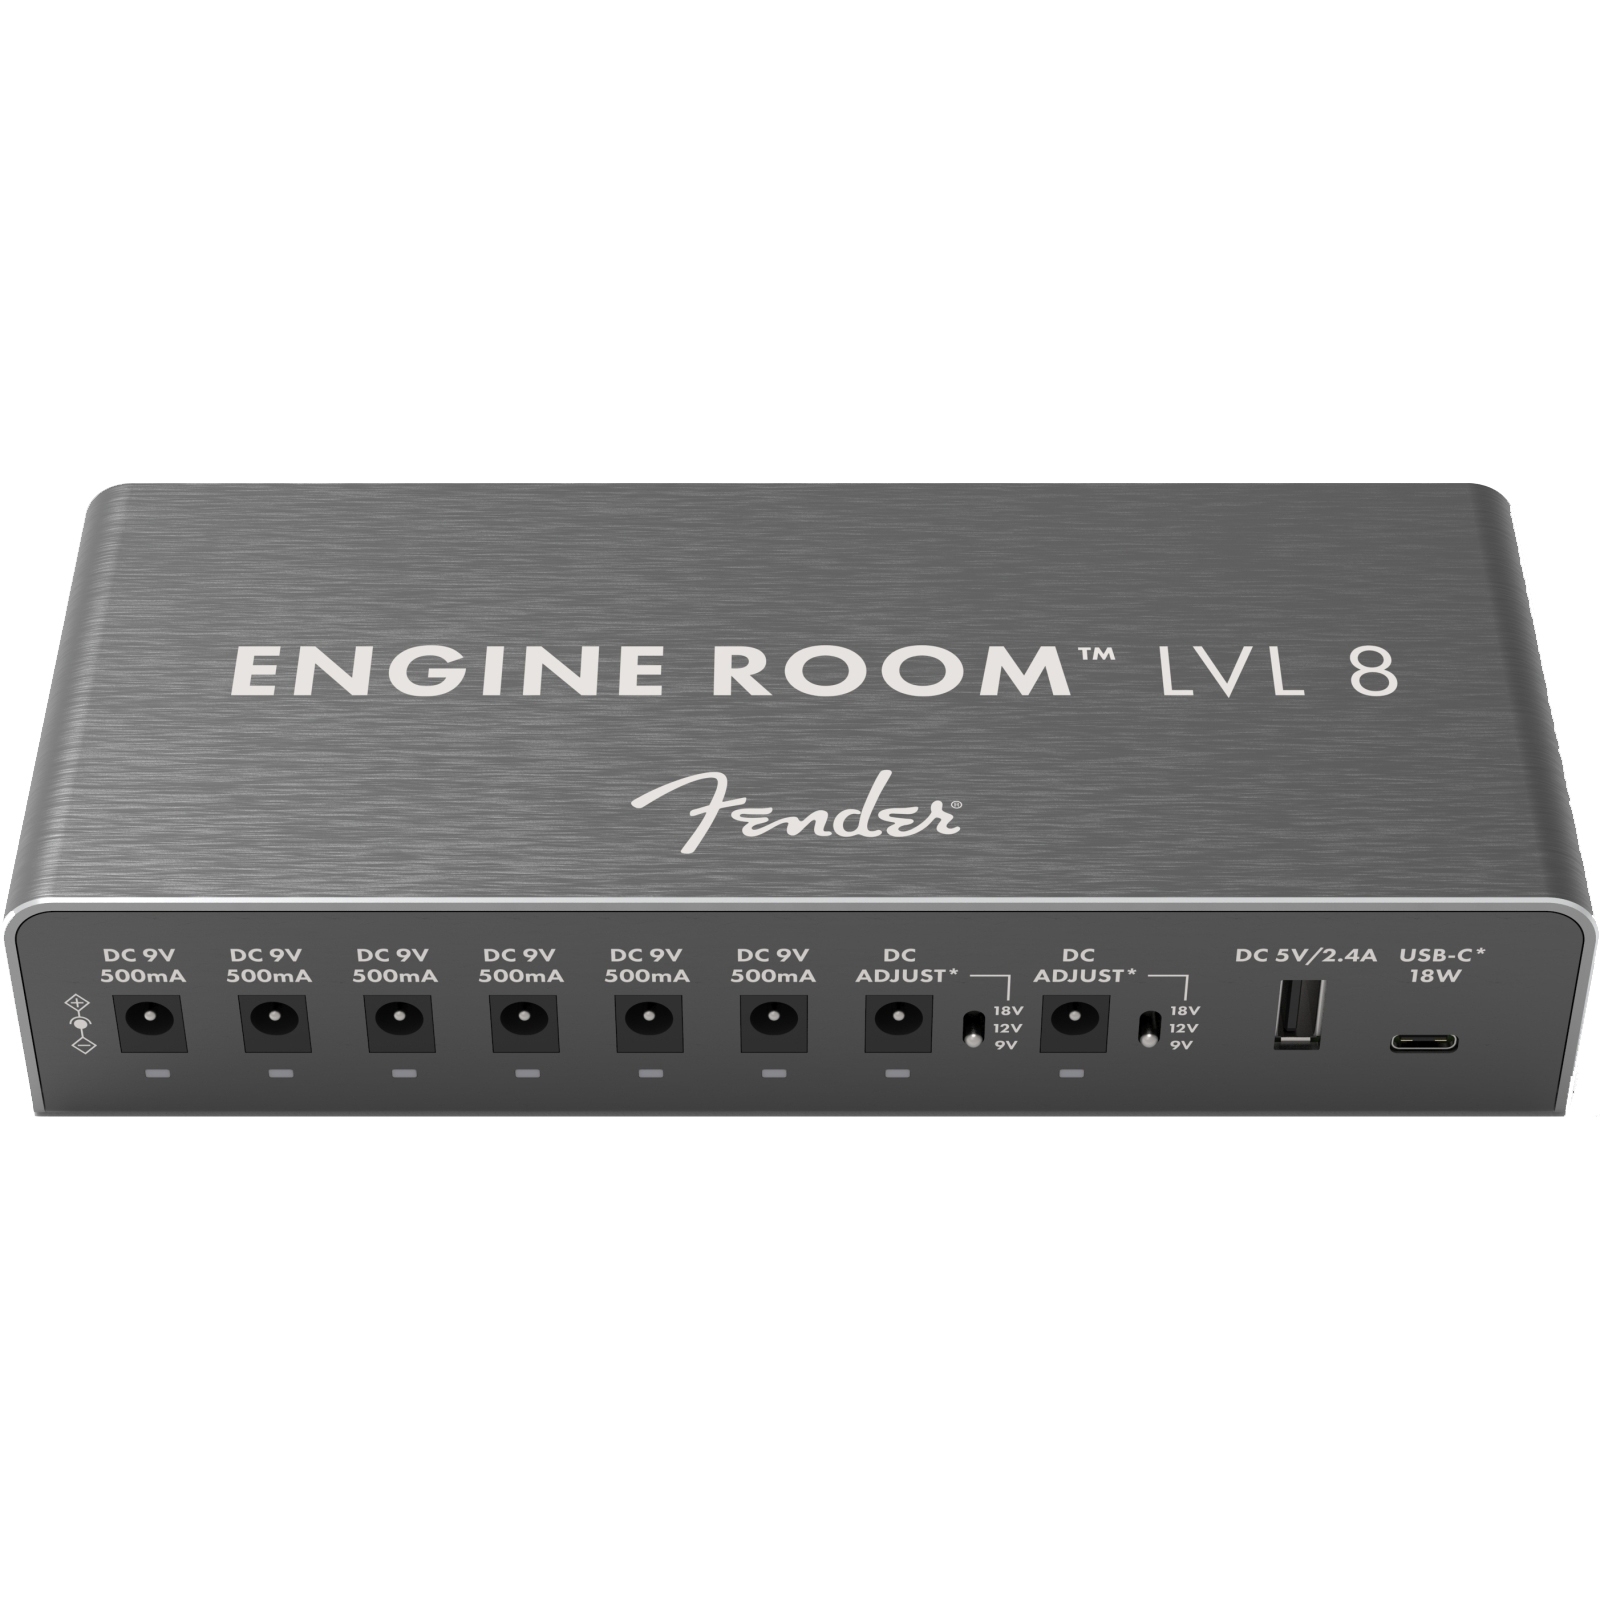 Fender Engine Room LVL8 Power Supply, 120V